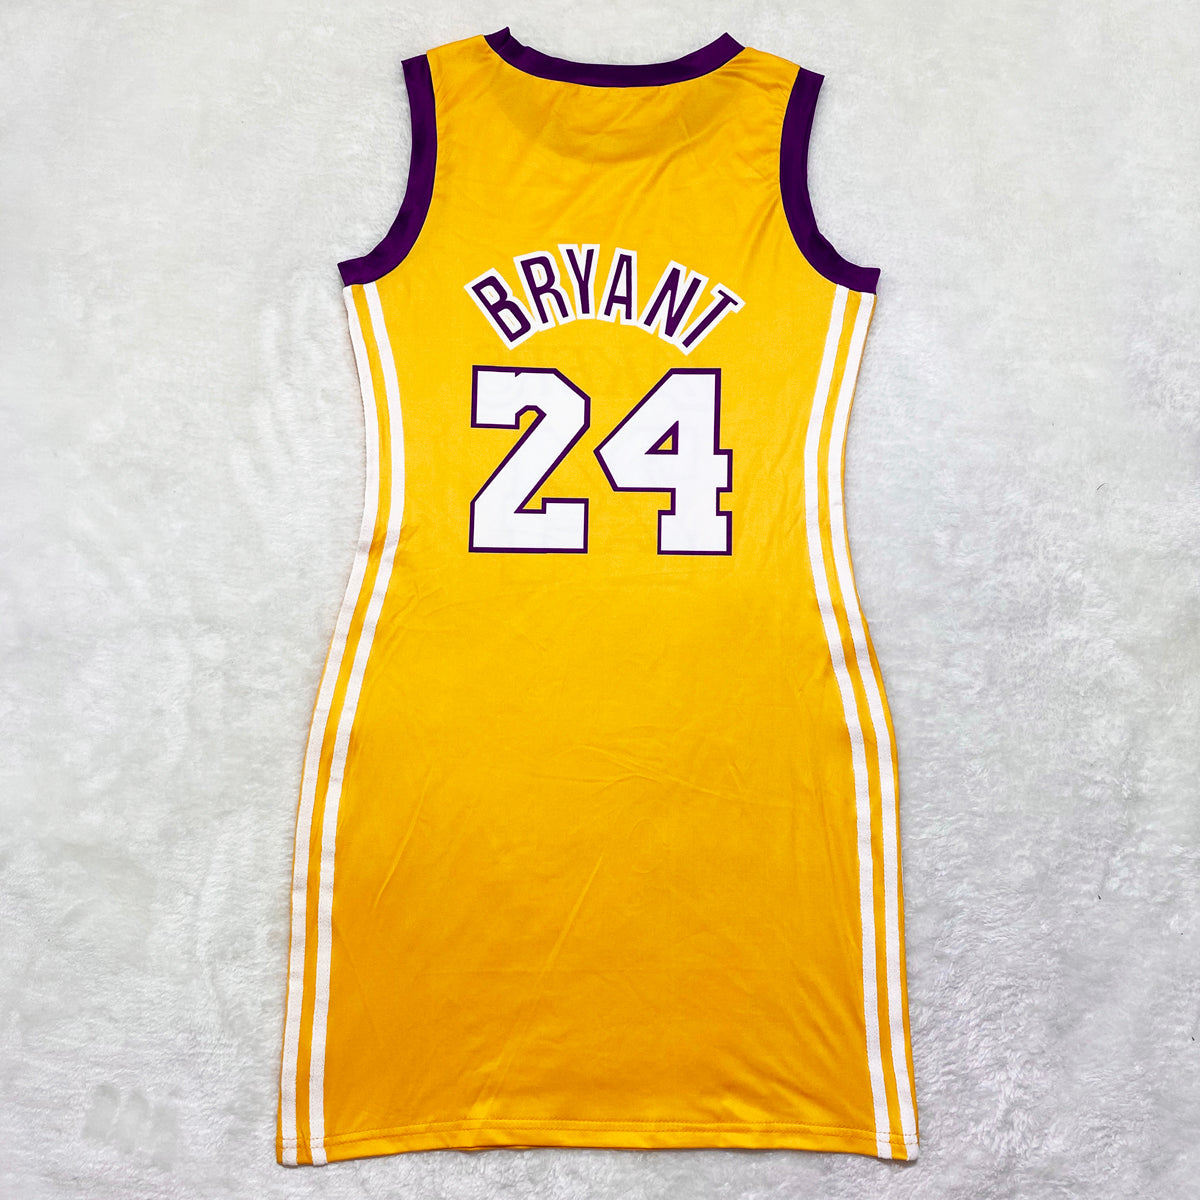 Yellow Lakers Jersey Dress